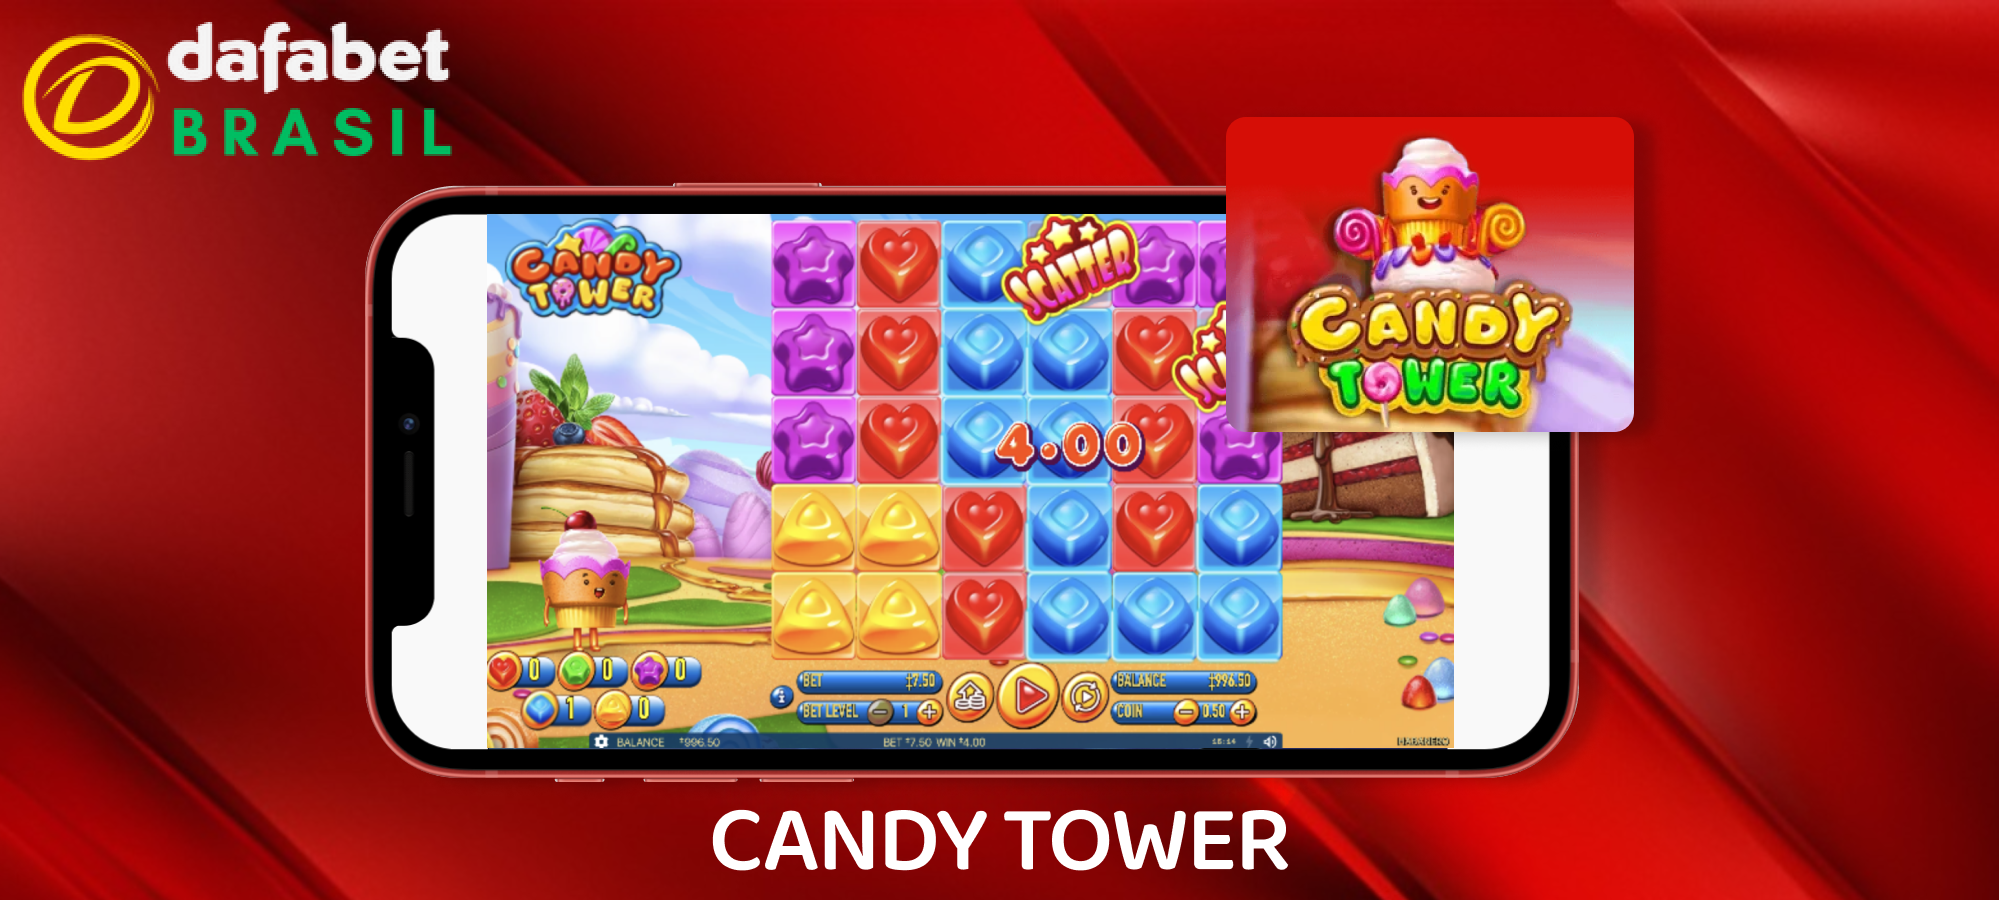 Jogo Candy Tower para jogadores da Dafabet Brasil